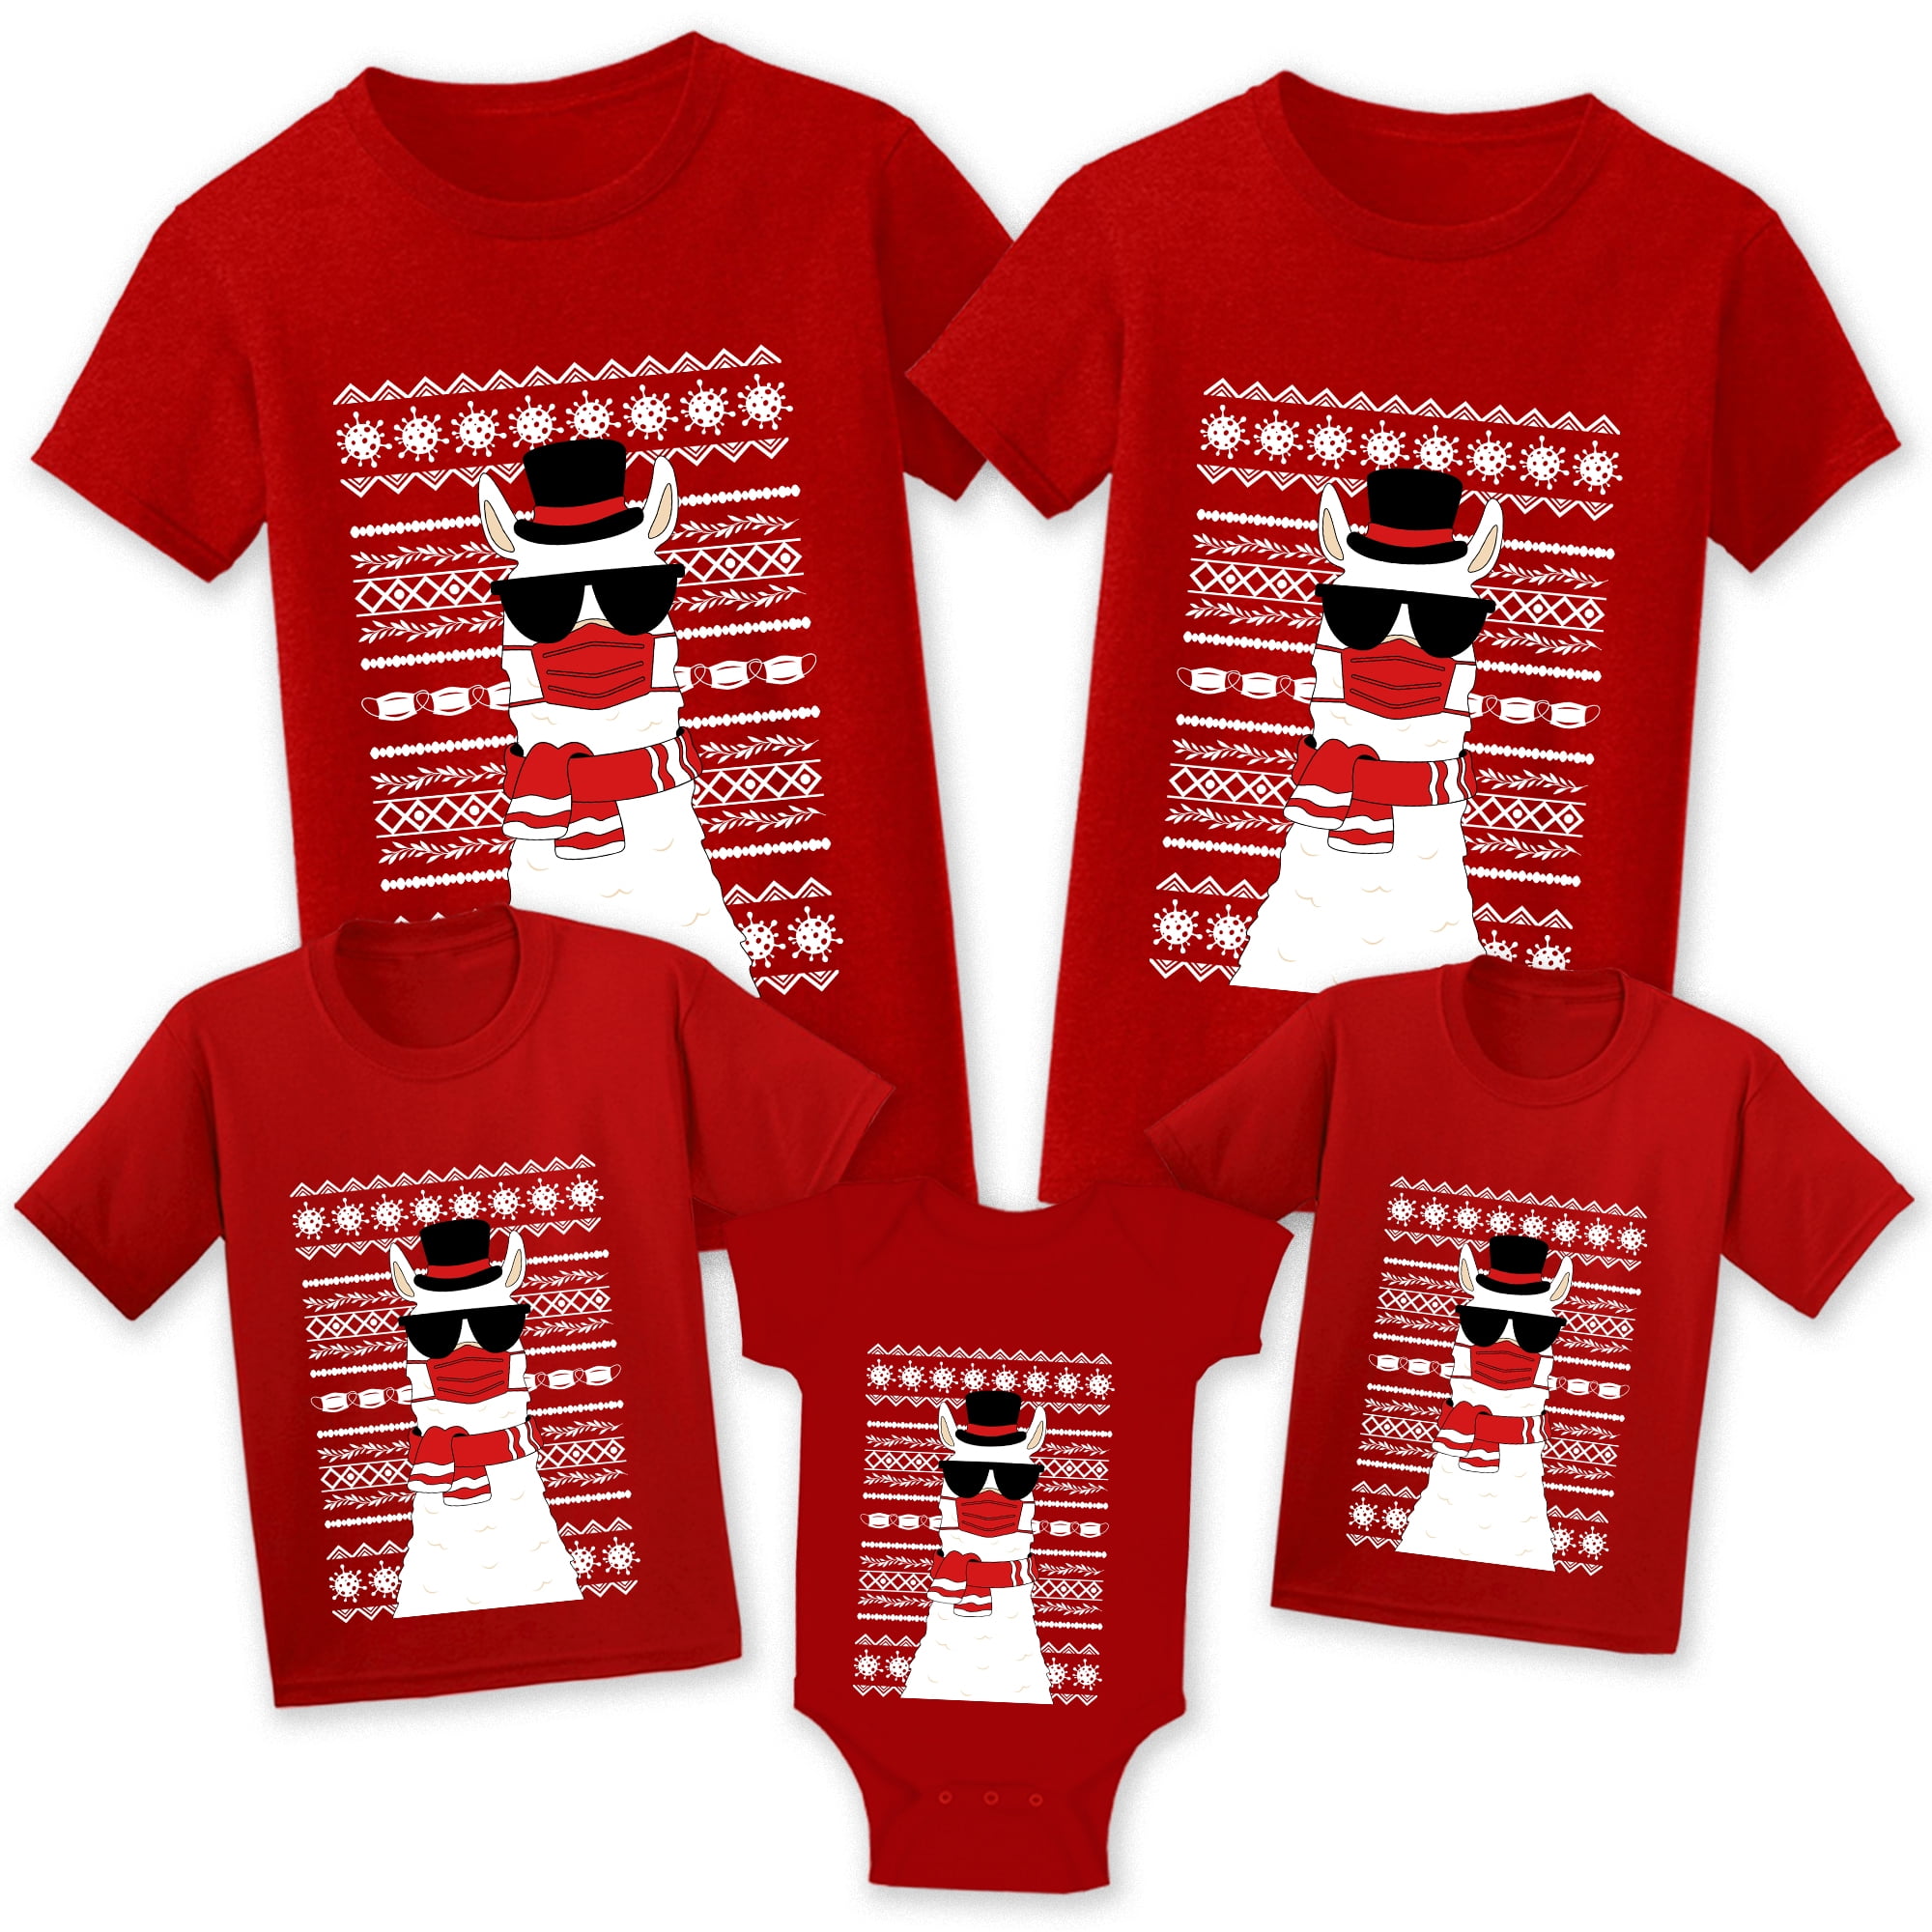 Funny Holiday Shirt Christmas TShirt Holiday Tee Gift Christmas Shirts for woman Lets get lit shirt Funny Christmas Shirt Lit T-shirt